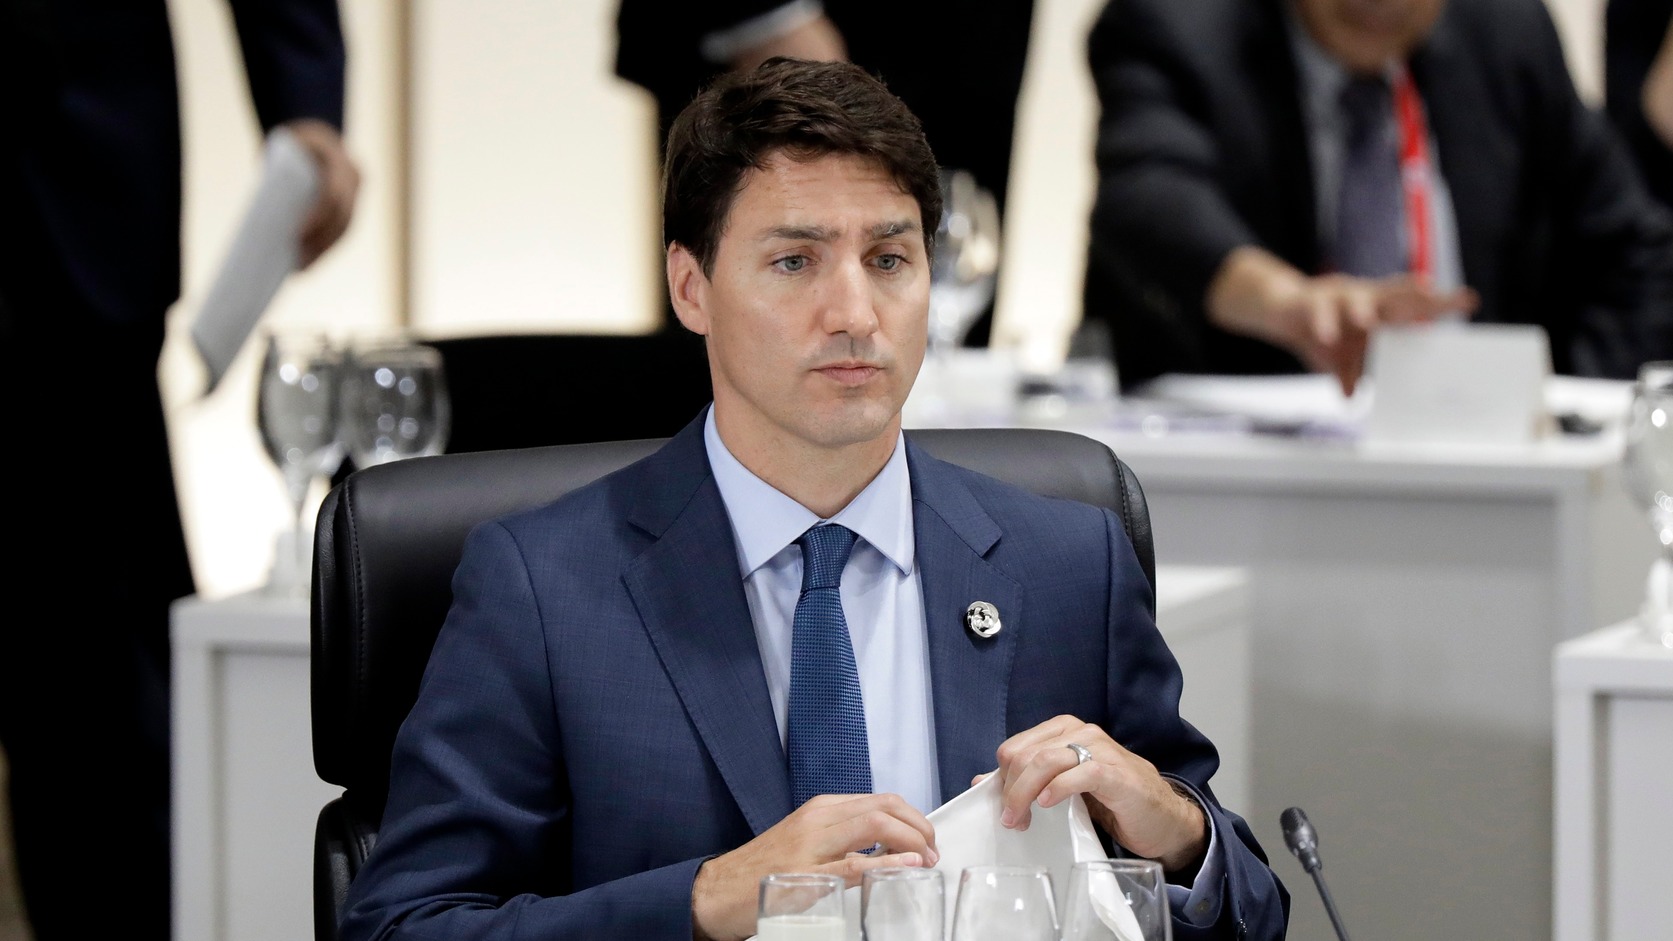 Feketére festett arccal fotózták le a kanadai kormányfőt, most bocsánatot kért